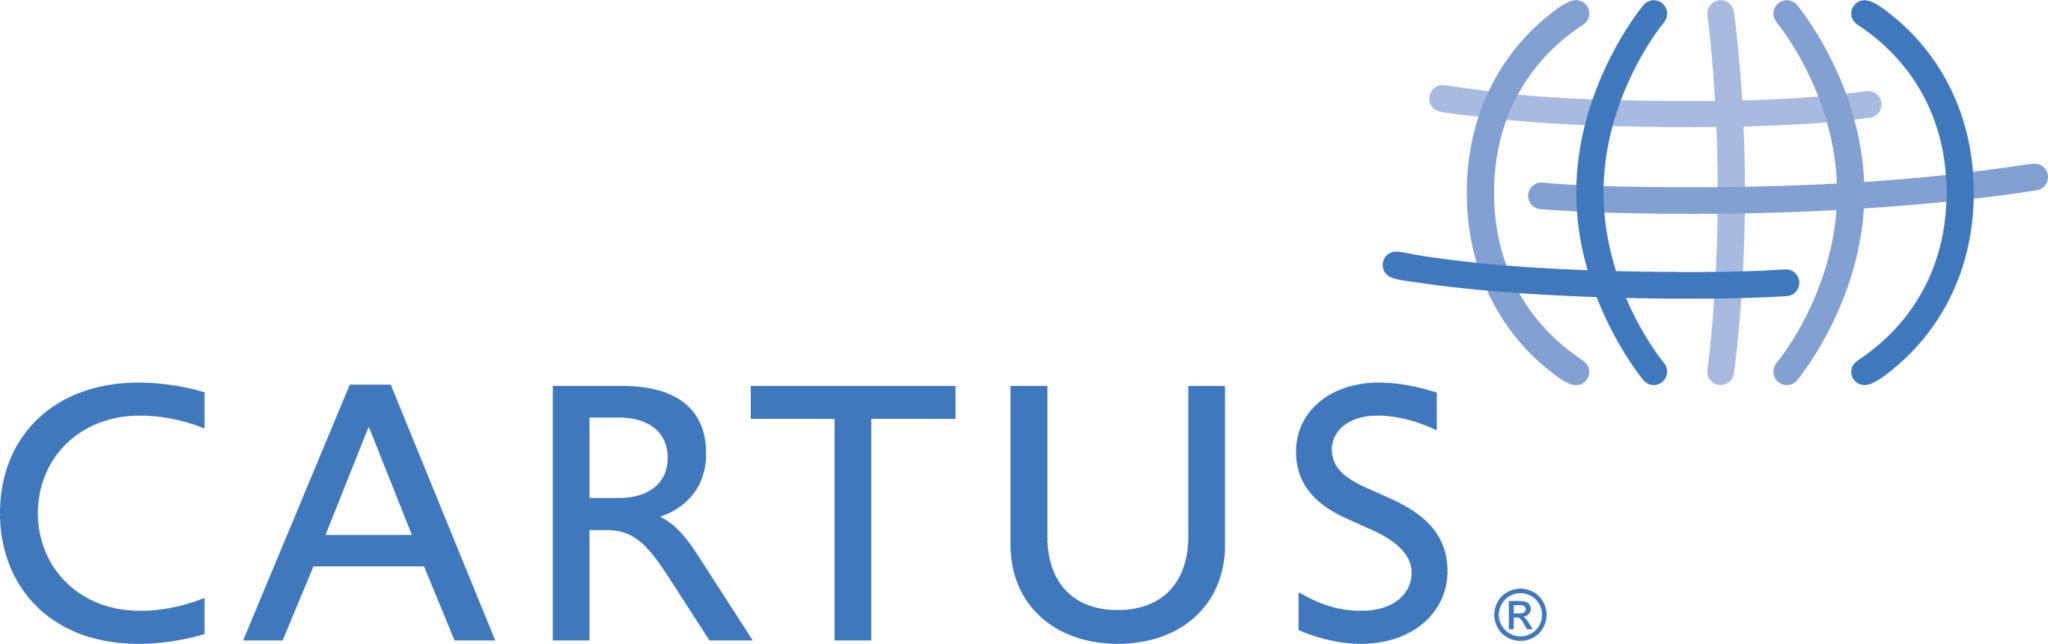 Large Cartus Logo Blue